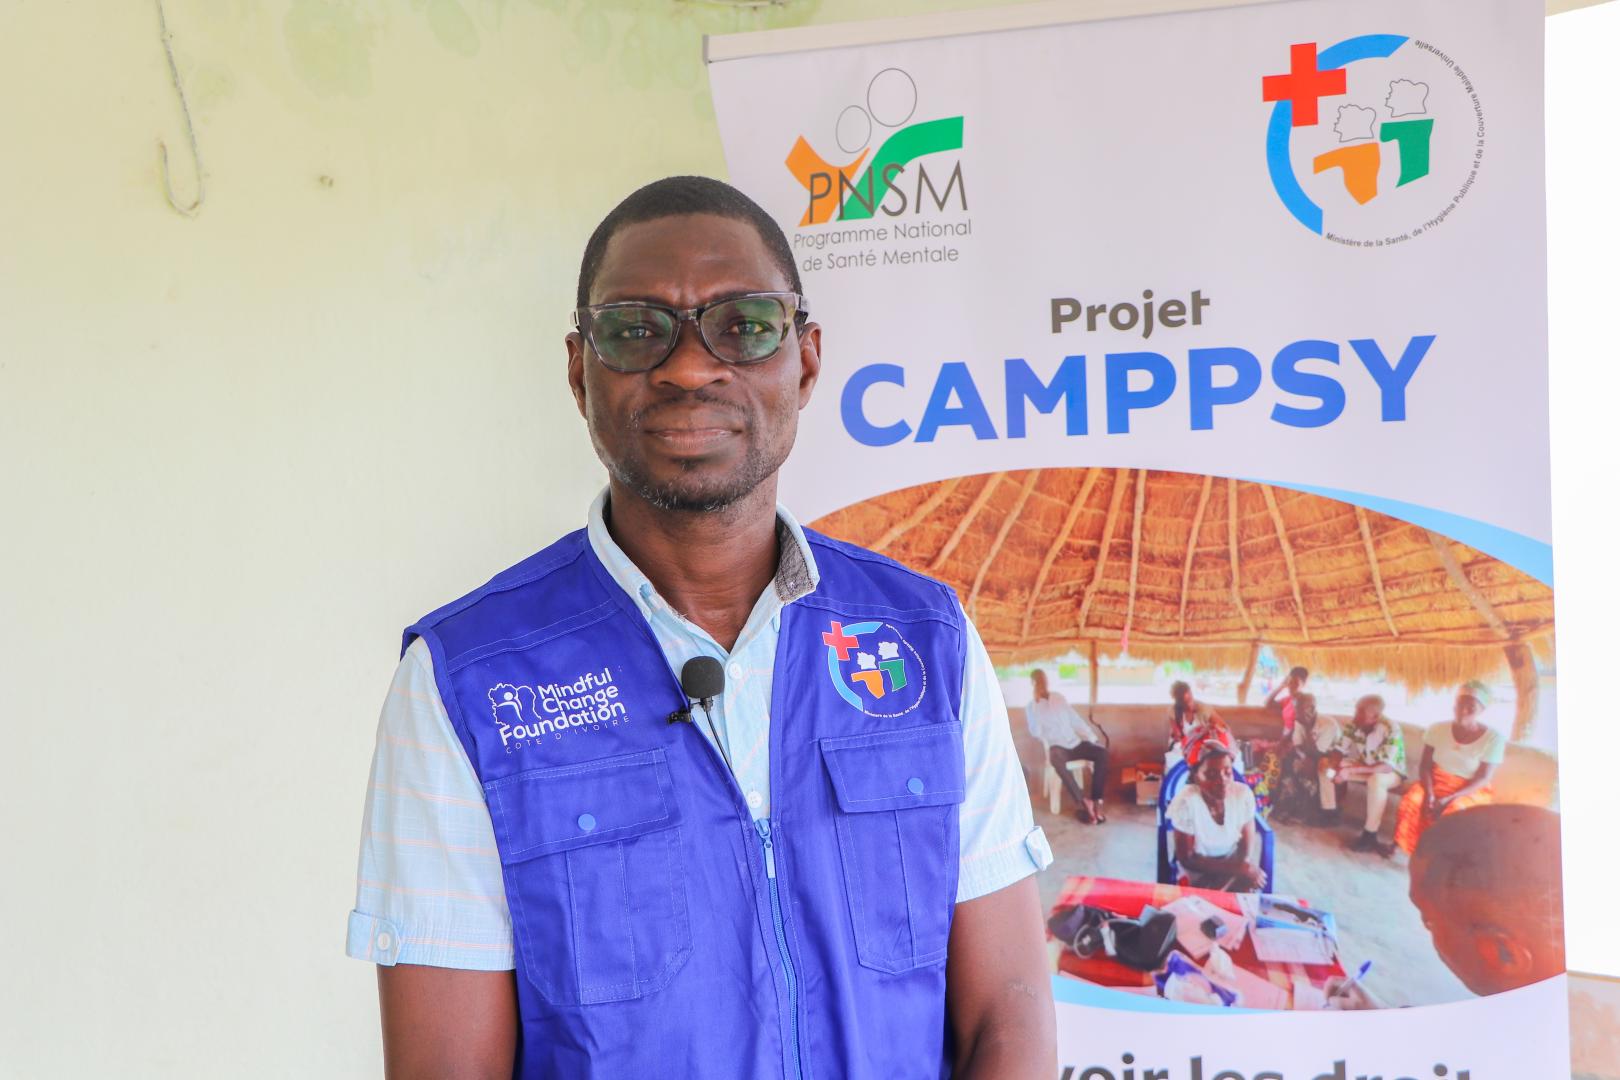 Côte d’Ivoire : des soins appropriés en santé mentale dans des camps de prière